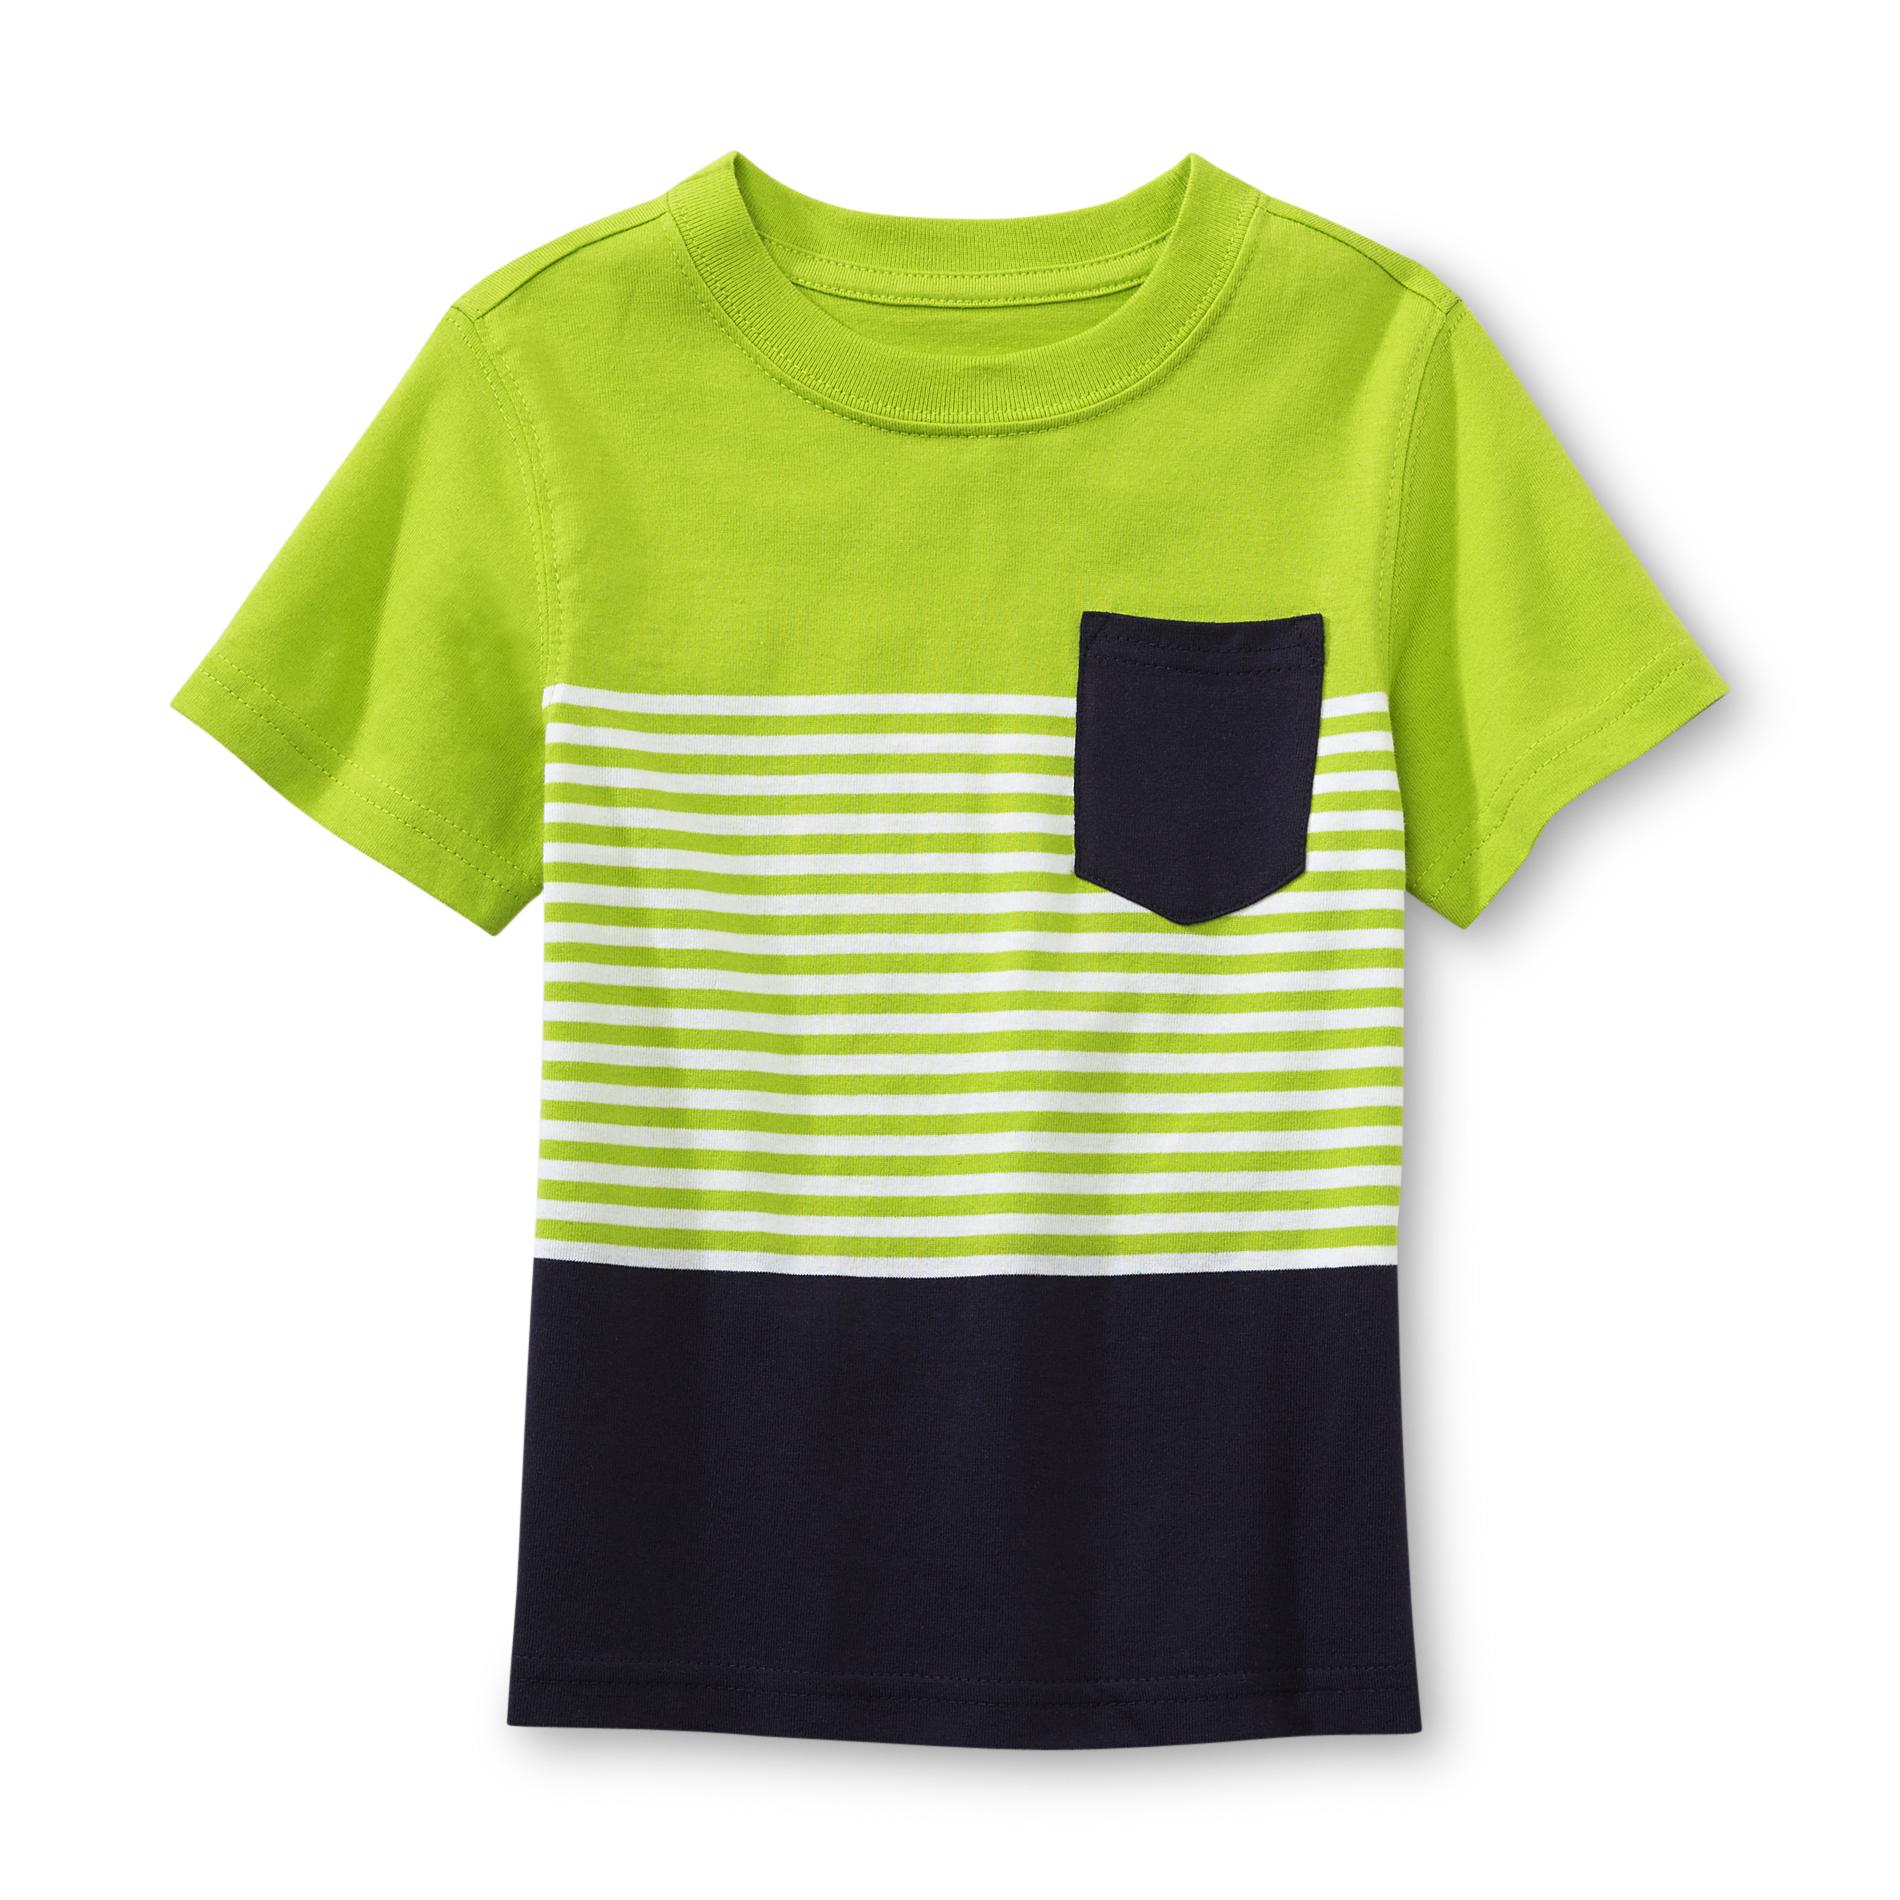 Toughskins Infant & Toddler Boy's Pocket T-Shirt